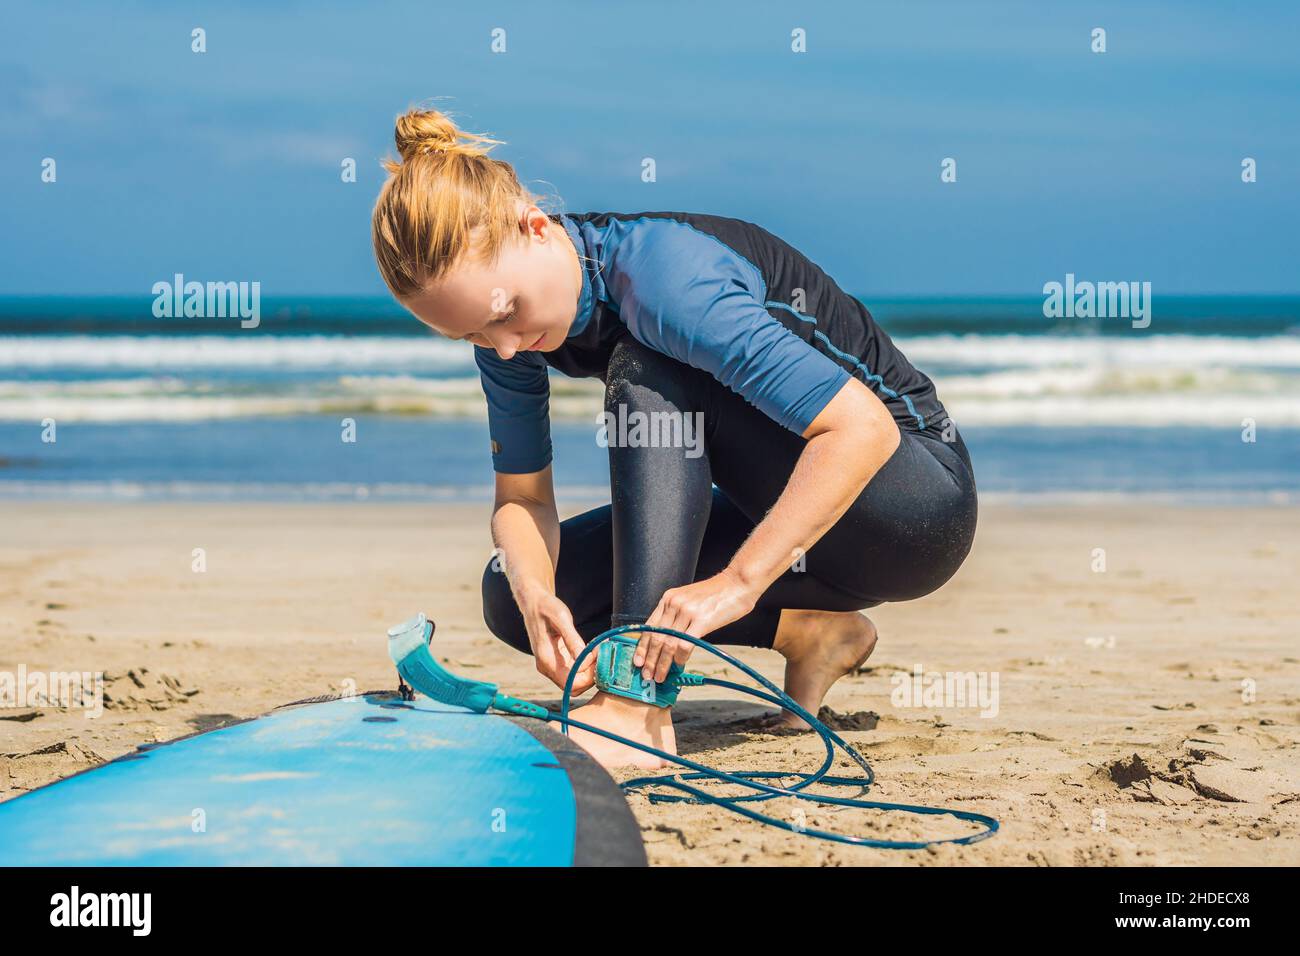 Tiempo de verano y concepto de descanso activo. Joven mujer surfista principiante fastens correa a través de la pierna, yendo a surfear en grandes olas barral en el océano, dreseed adentro Foto de stock